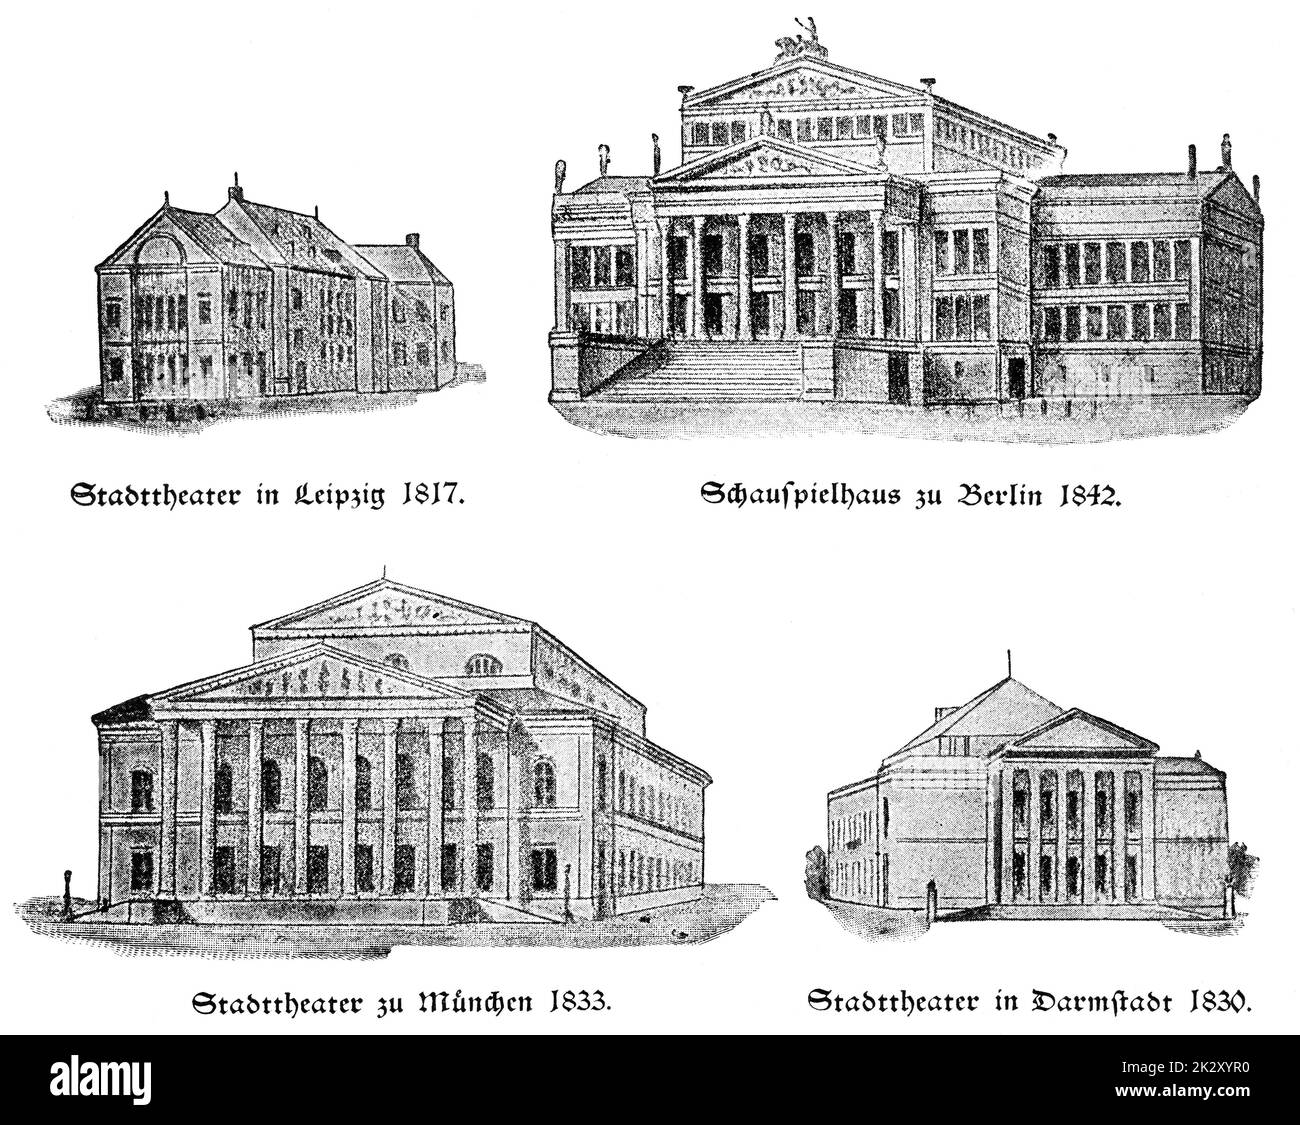 Konzerthaus (Schauspielhaus) Berlin, 1842, Stadttheater Leipzig, 1817, Stadttheater (Théâtre national) Munich, 1833, Staatstheater Darmstadt, 1830. Illustration du 19e siècle. Arrière-plan blanc. Banque D'Images